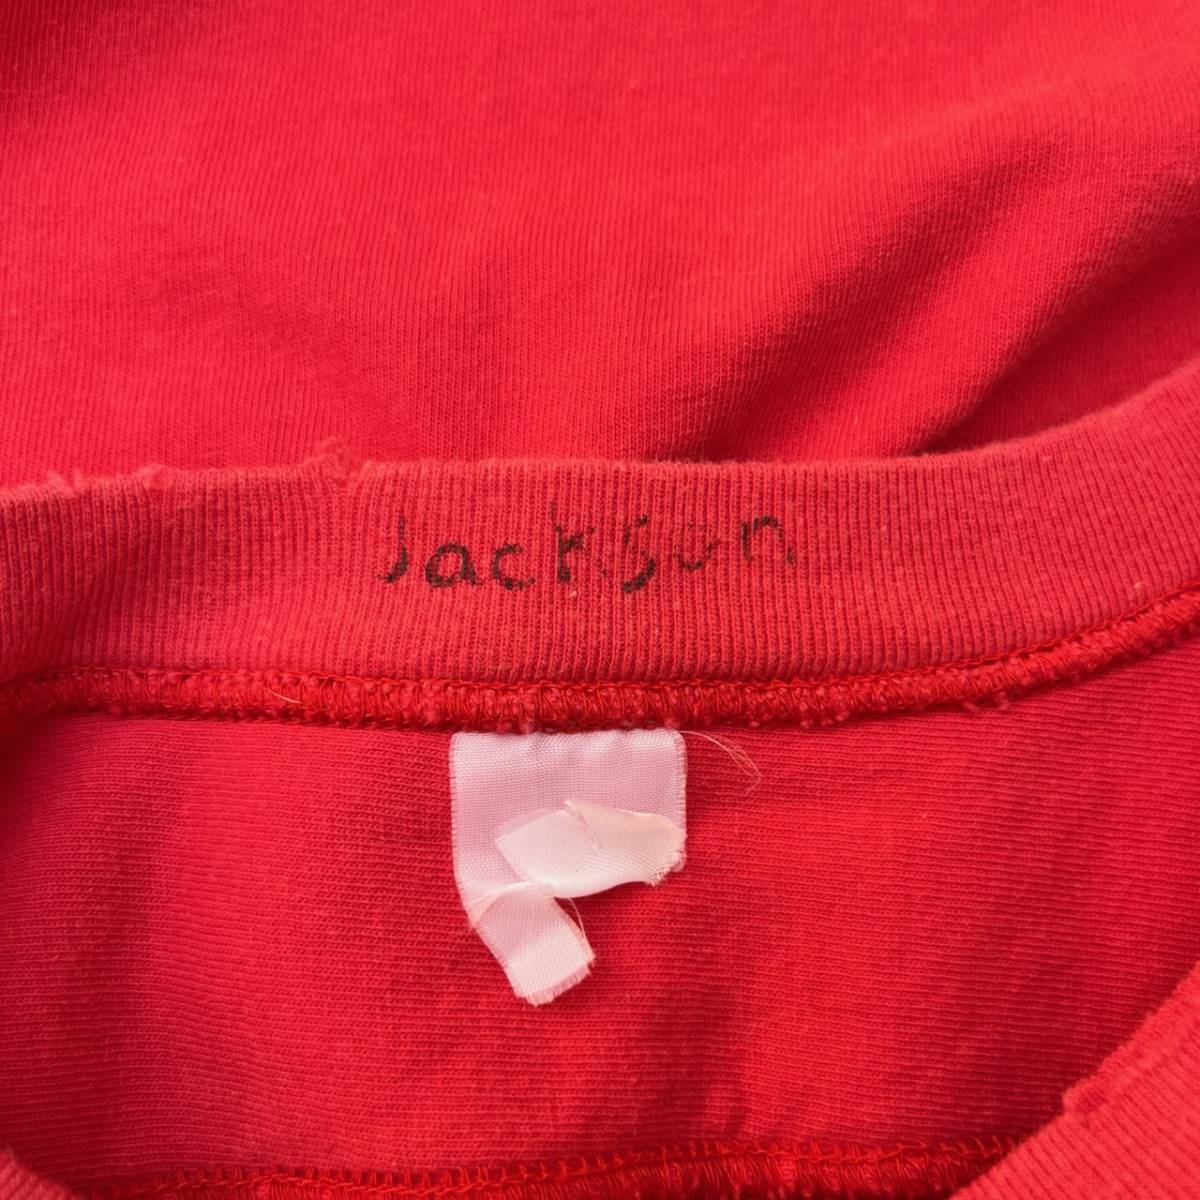 JACSON MATISSE ジャクソンマティス Sサイズ フットボールシャツ ナンバリング ヴィンテージ加工 レッド